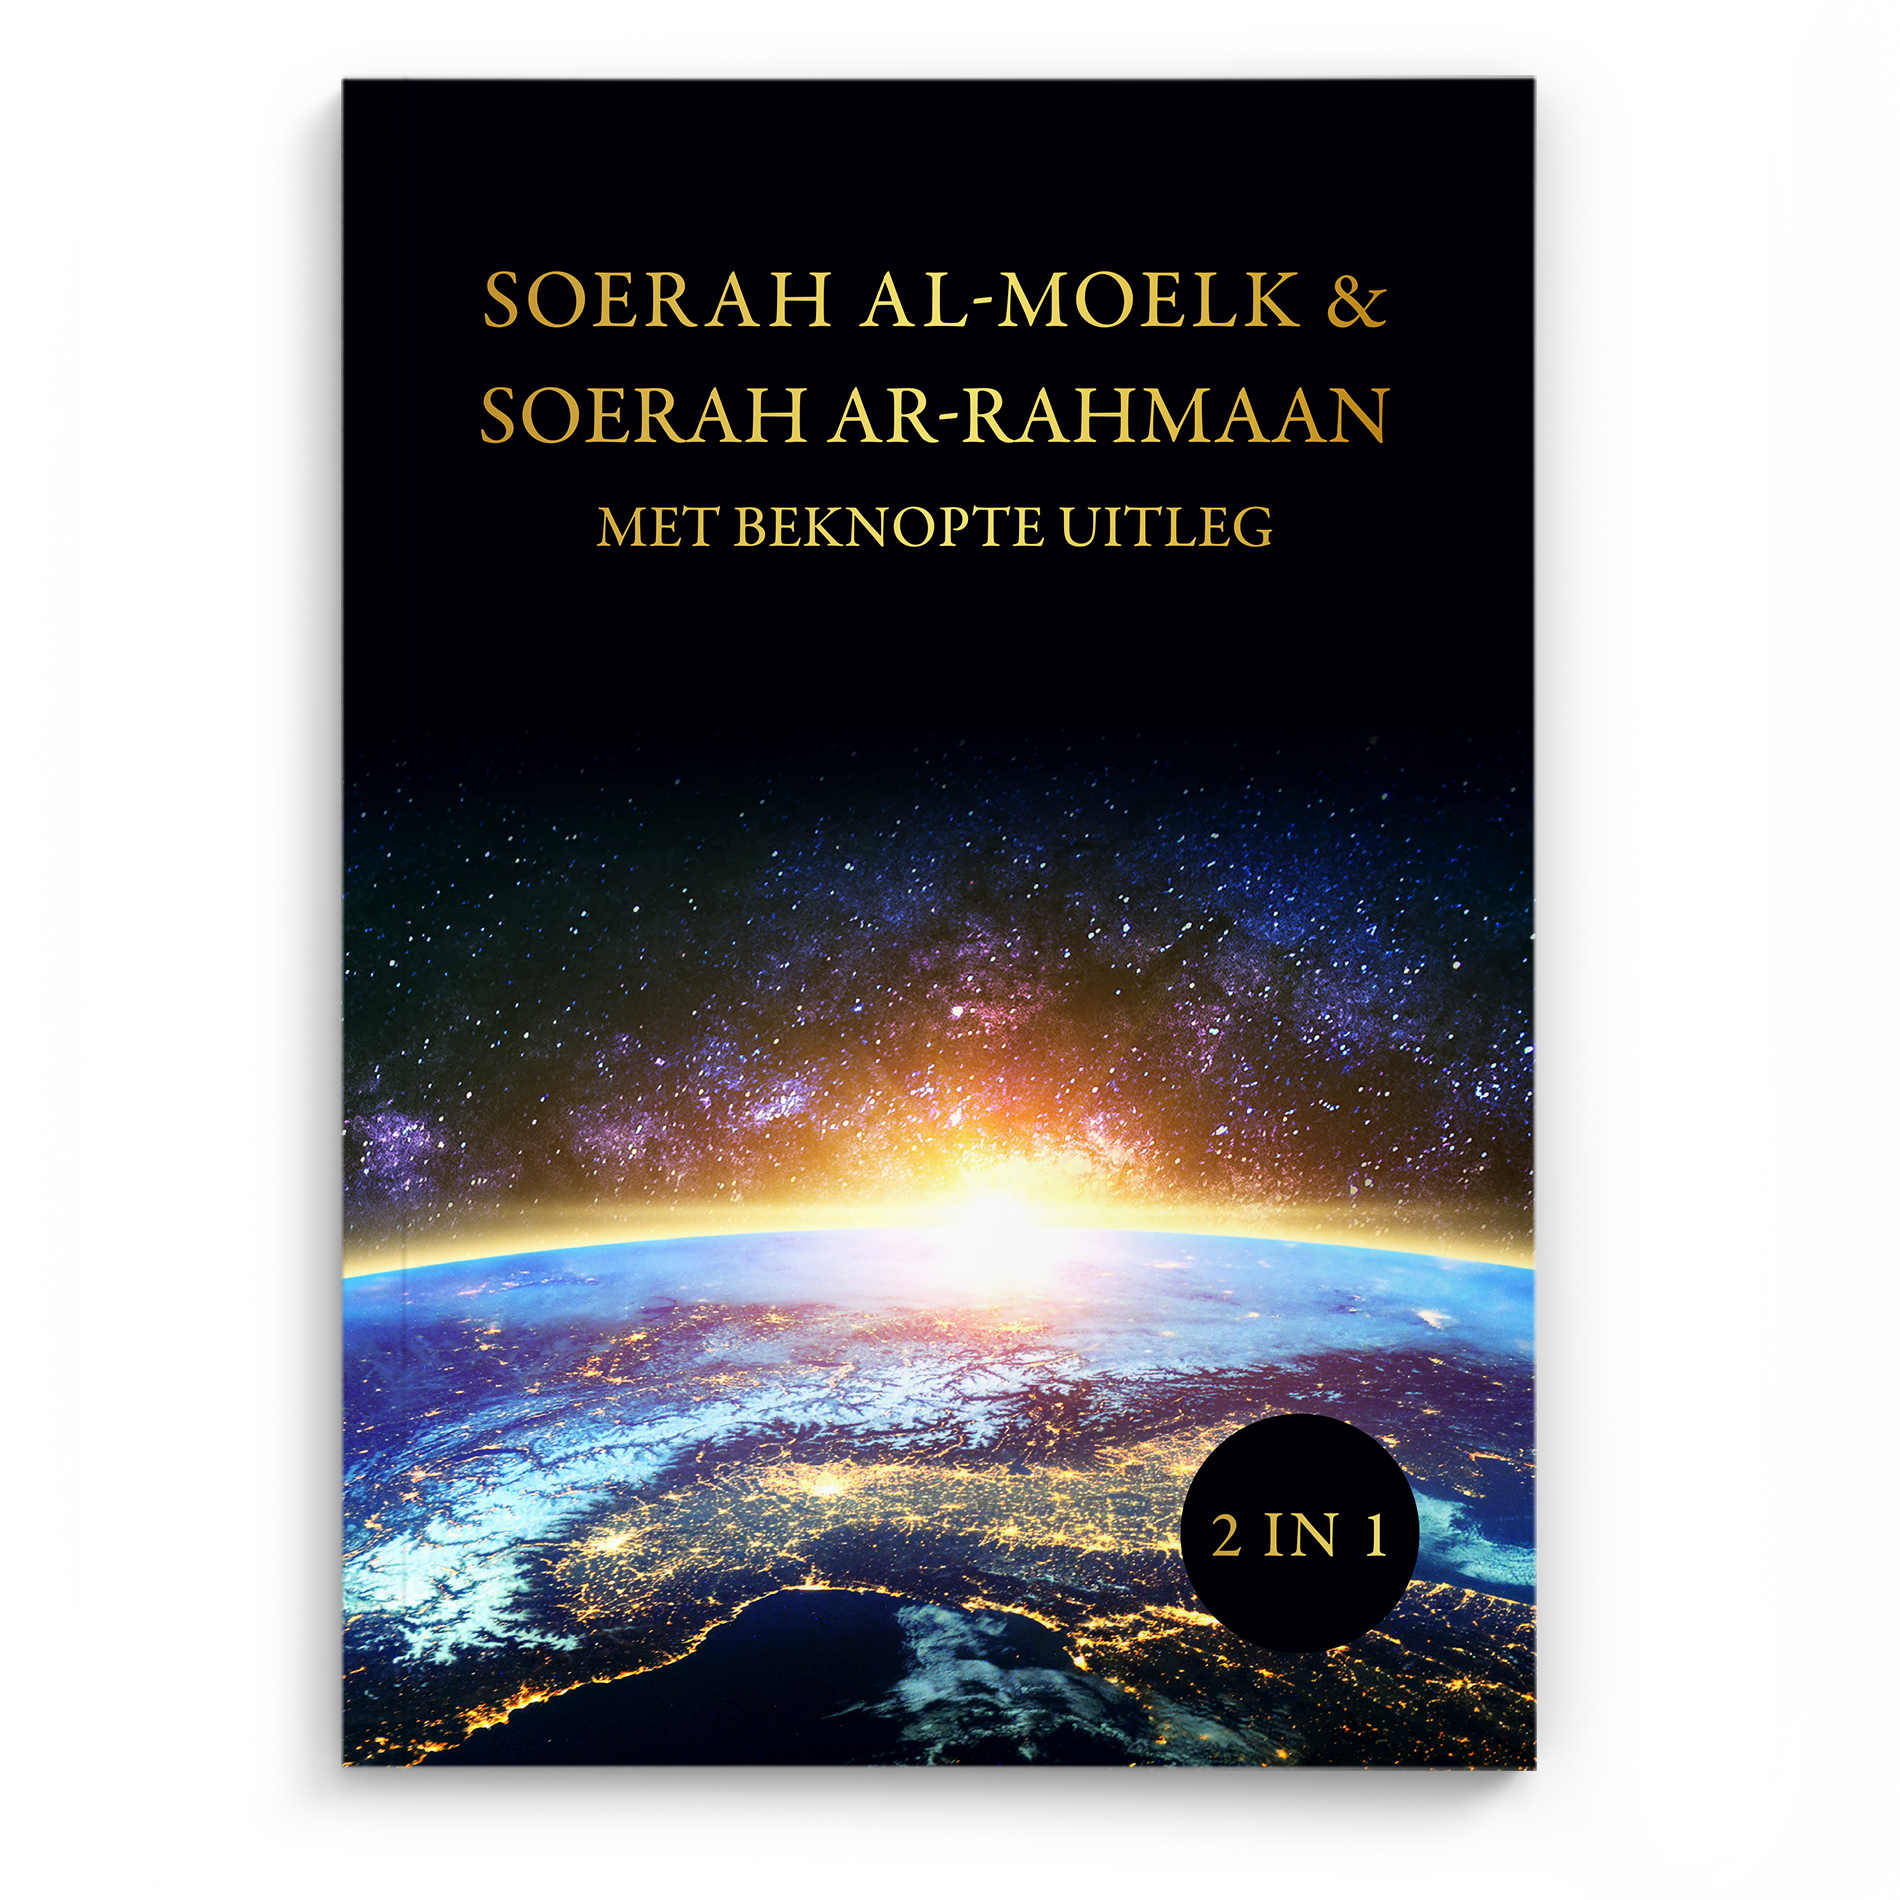 Soerah Ar-Rahmaan & Soerah Al-moelk- Met beknopte uitleg